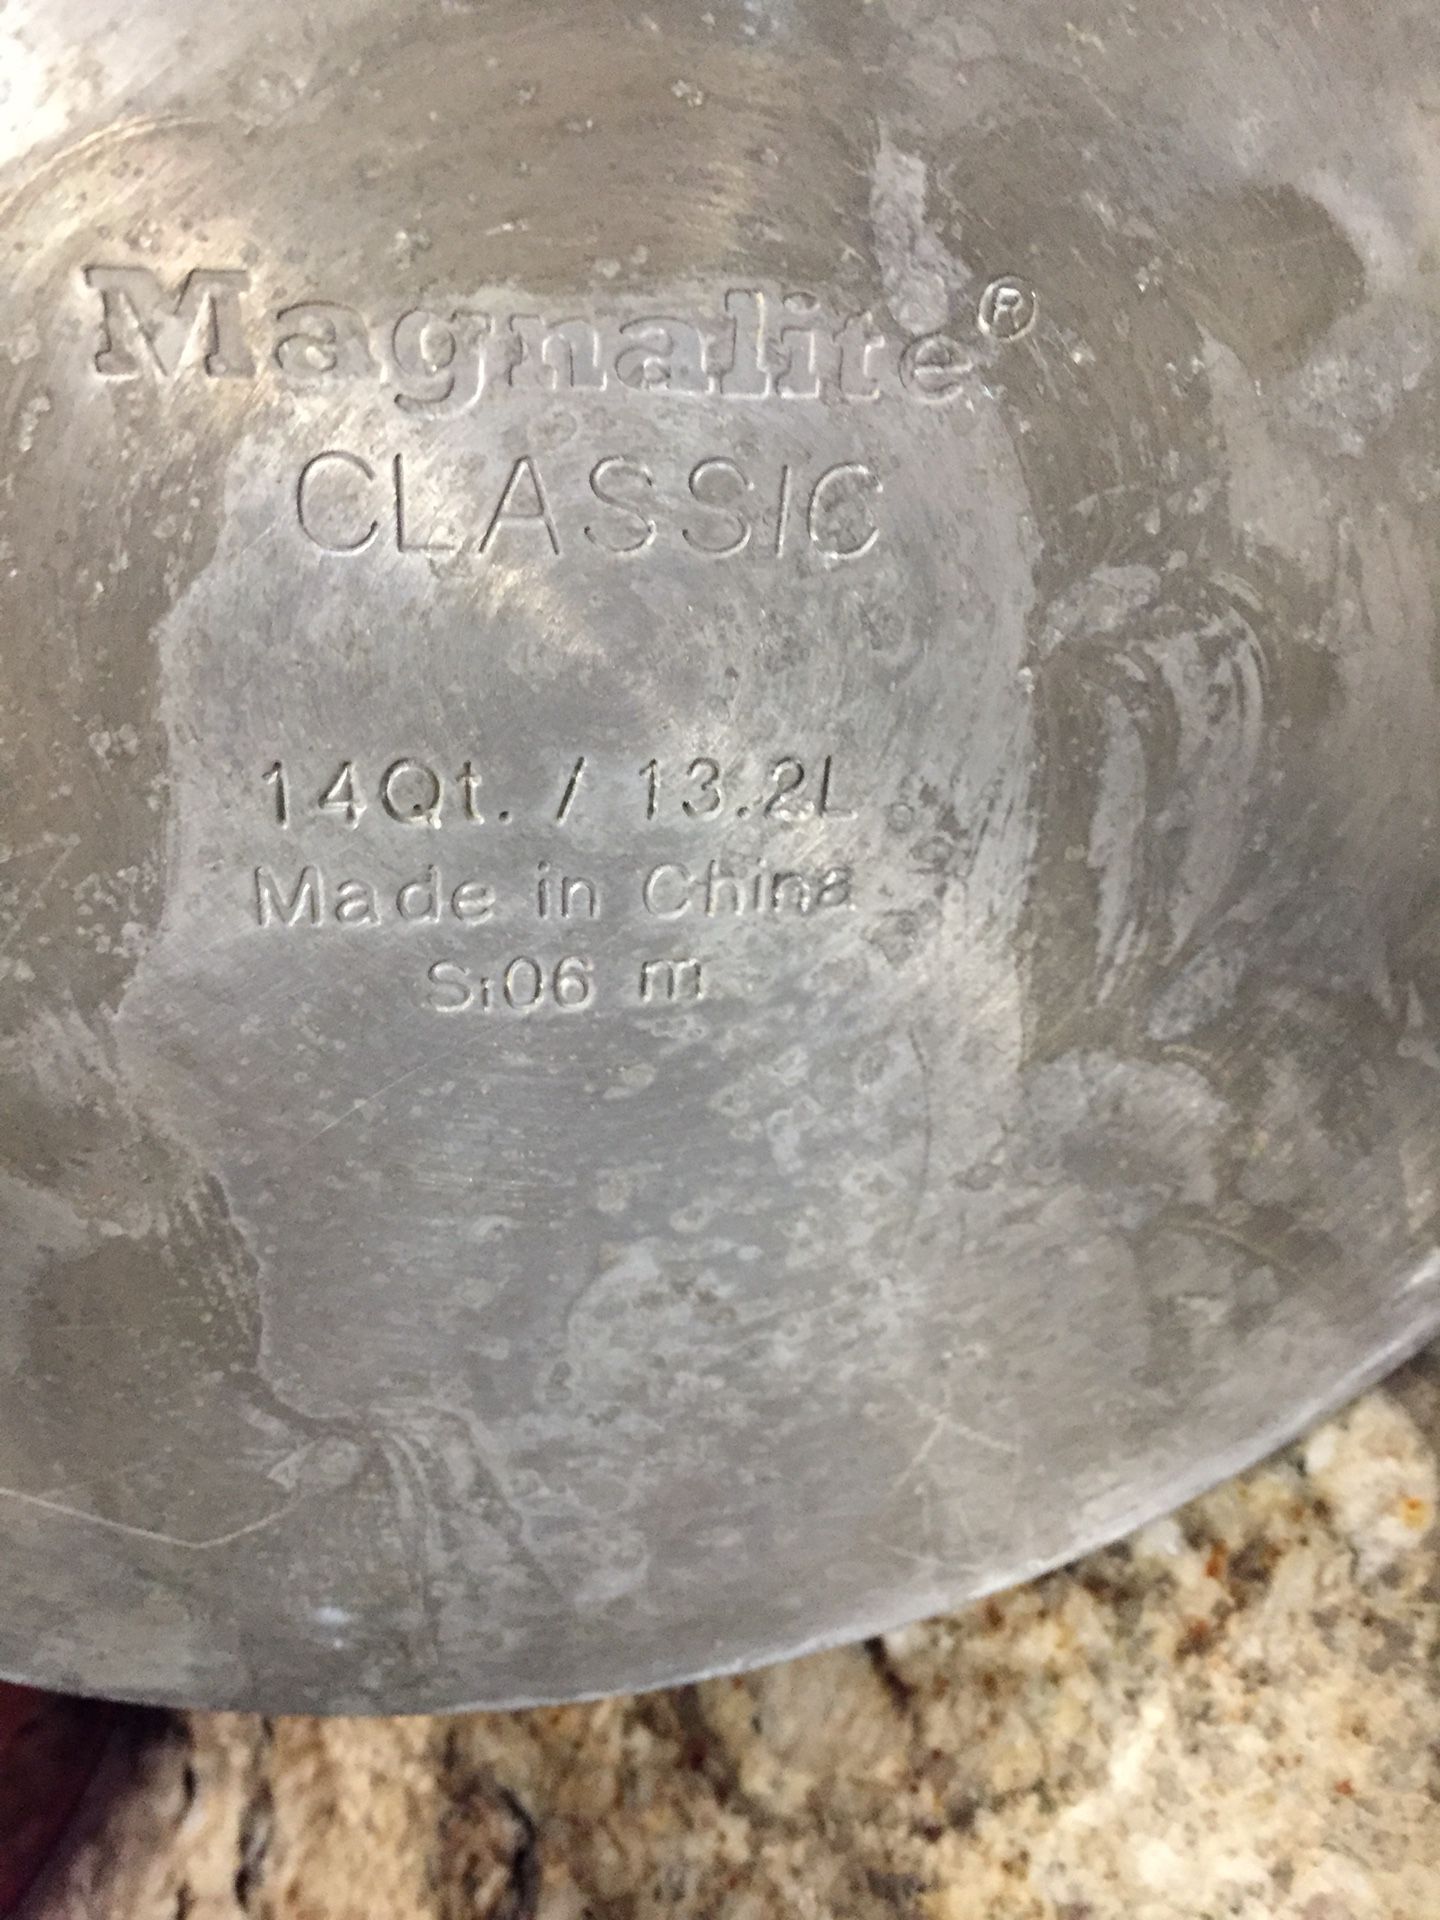 Magnalite Cast Aluminum 14-Quart Stock Pot